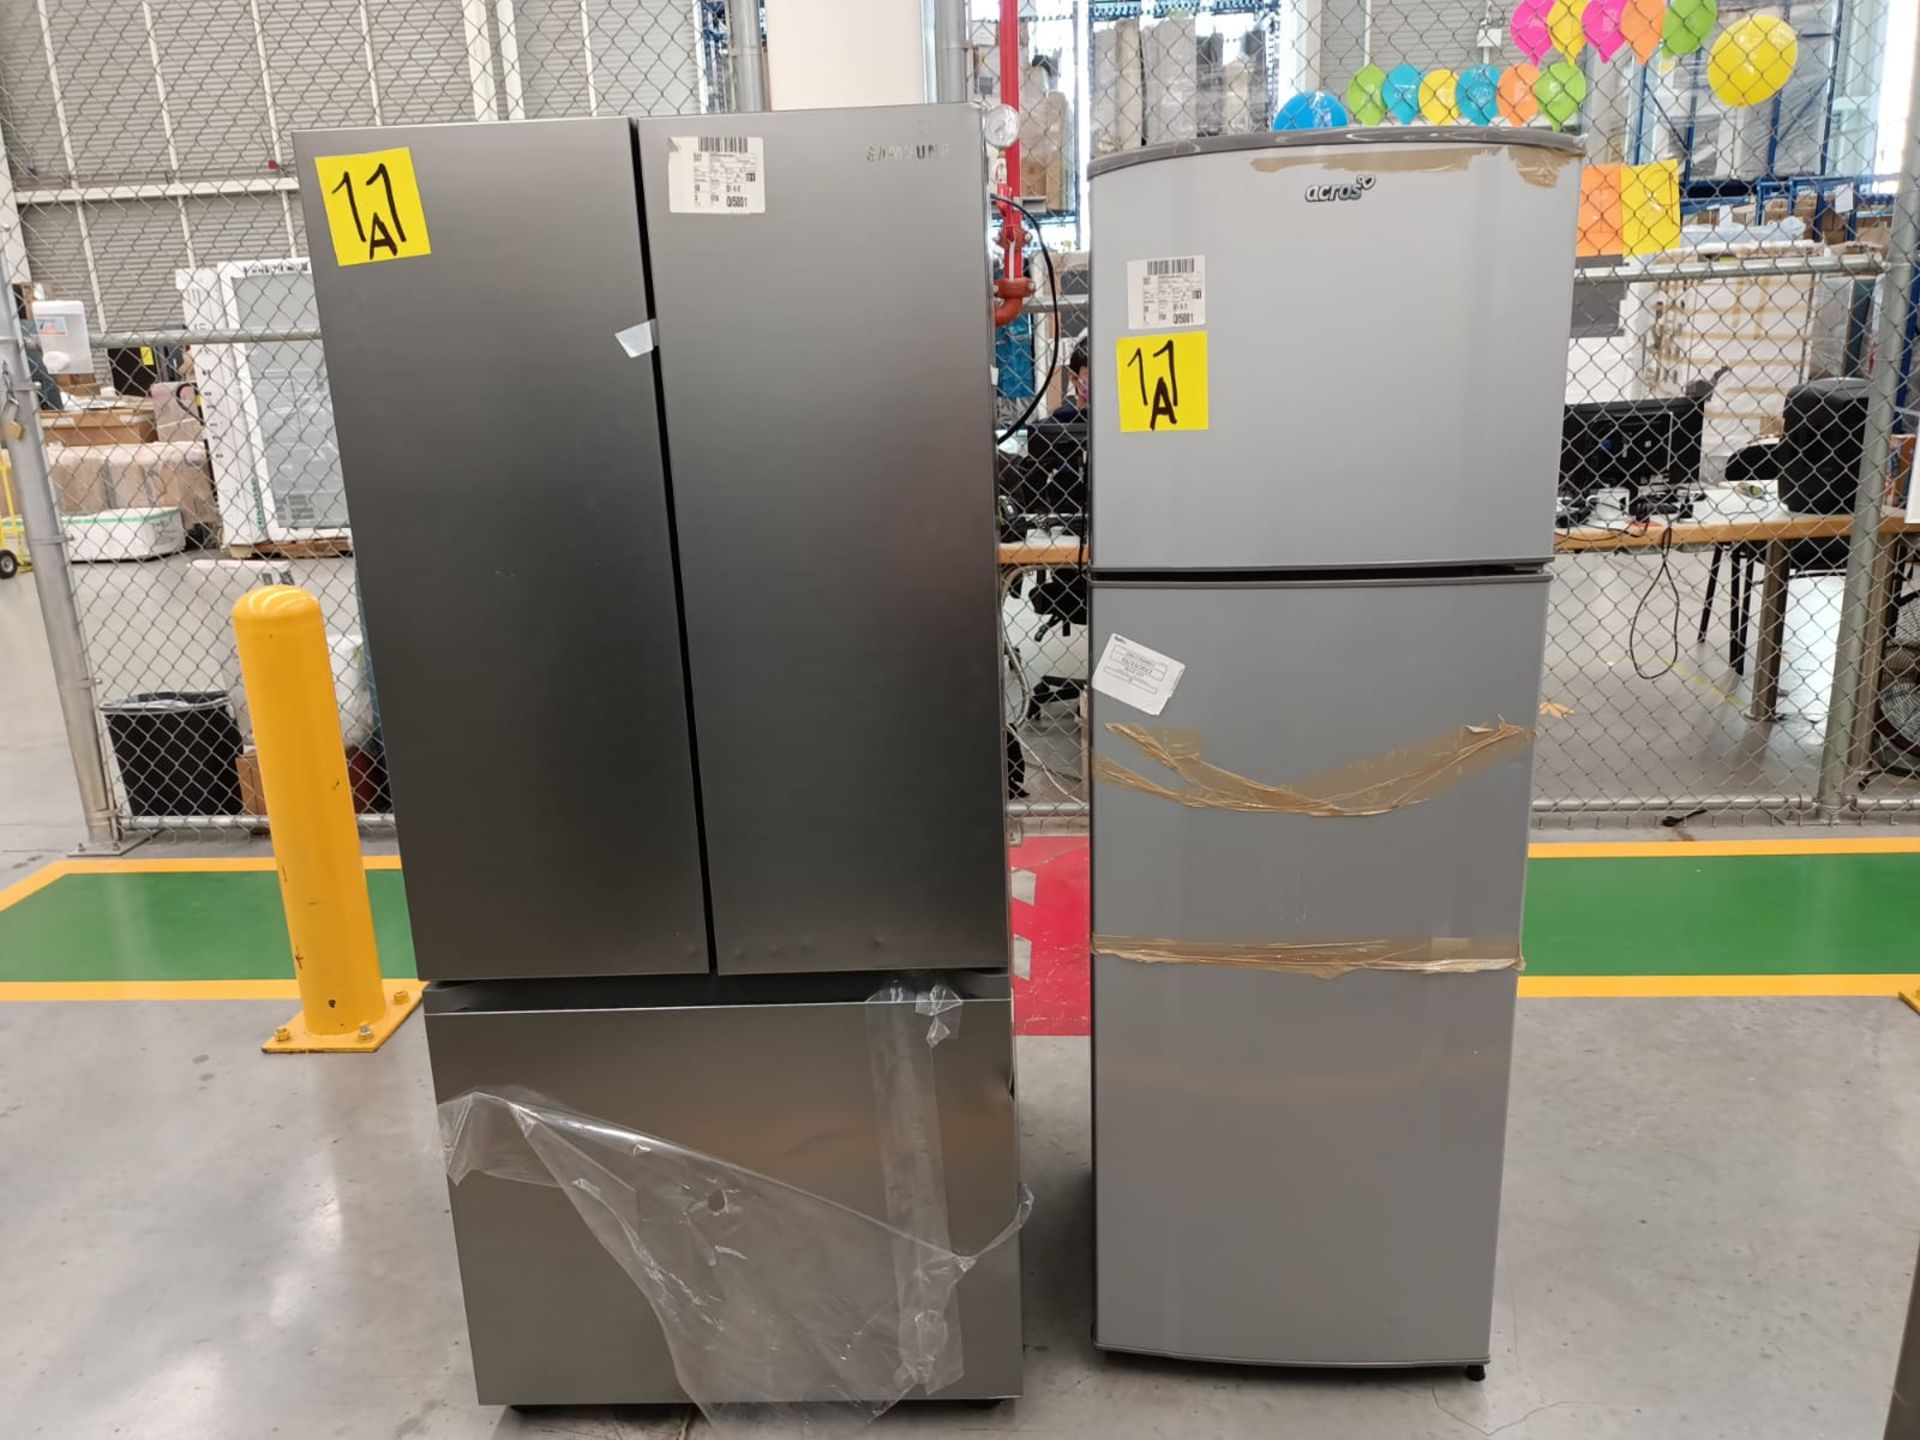 Lote de 2 refrigeradores incluye: 1 refrigerador marca Samsung, modelo RF22A4010S9/EM - Image 35 of 51